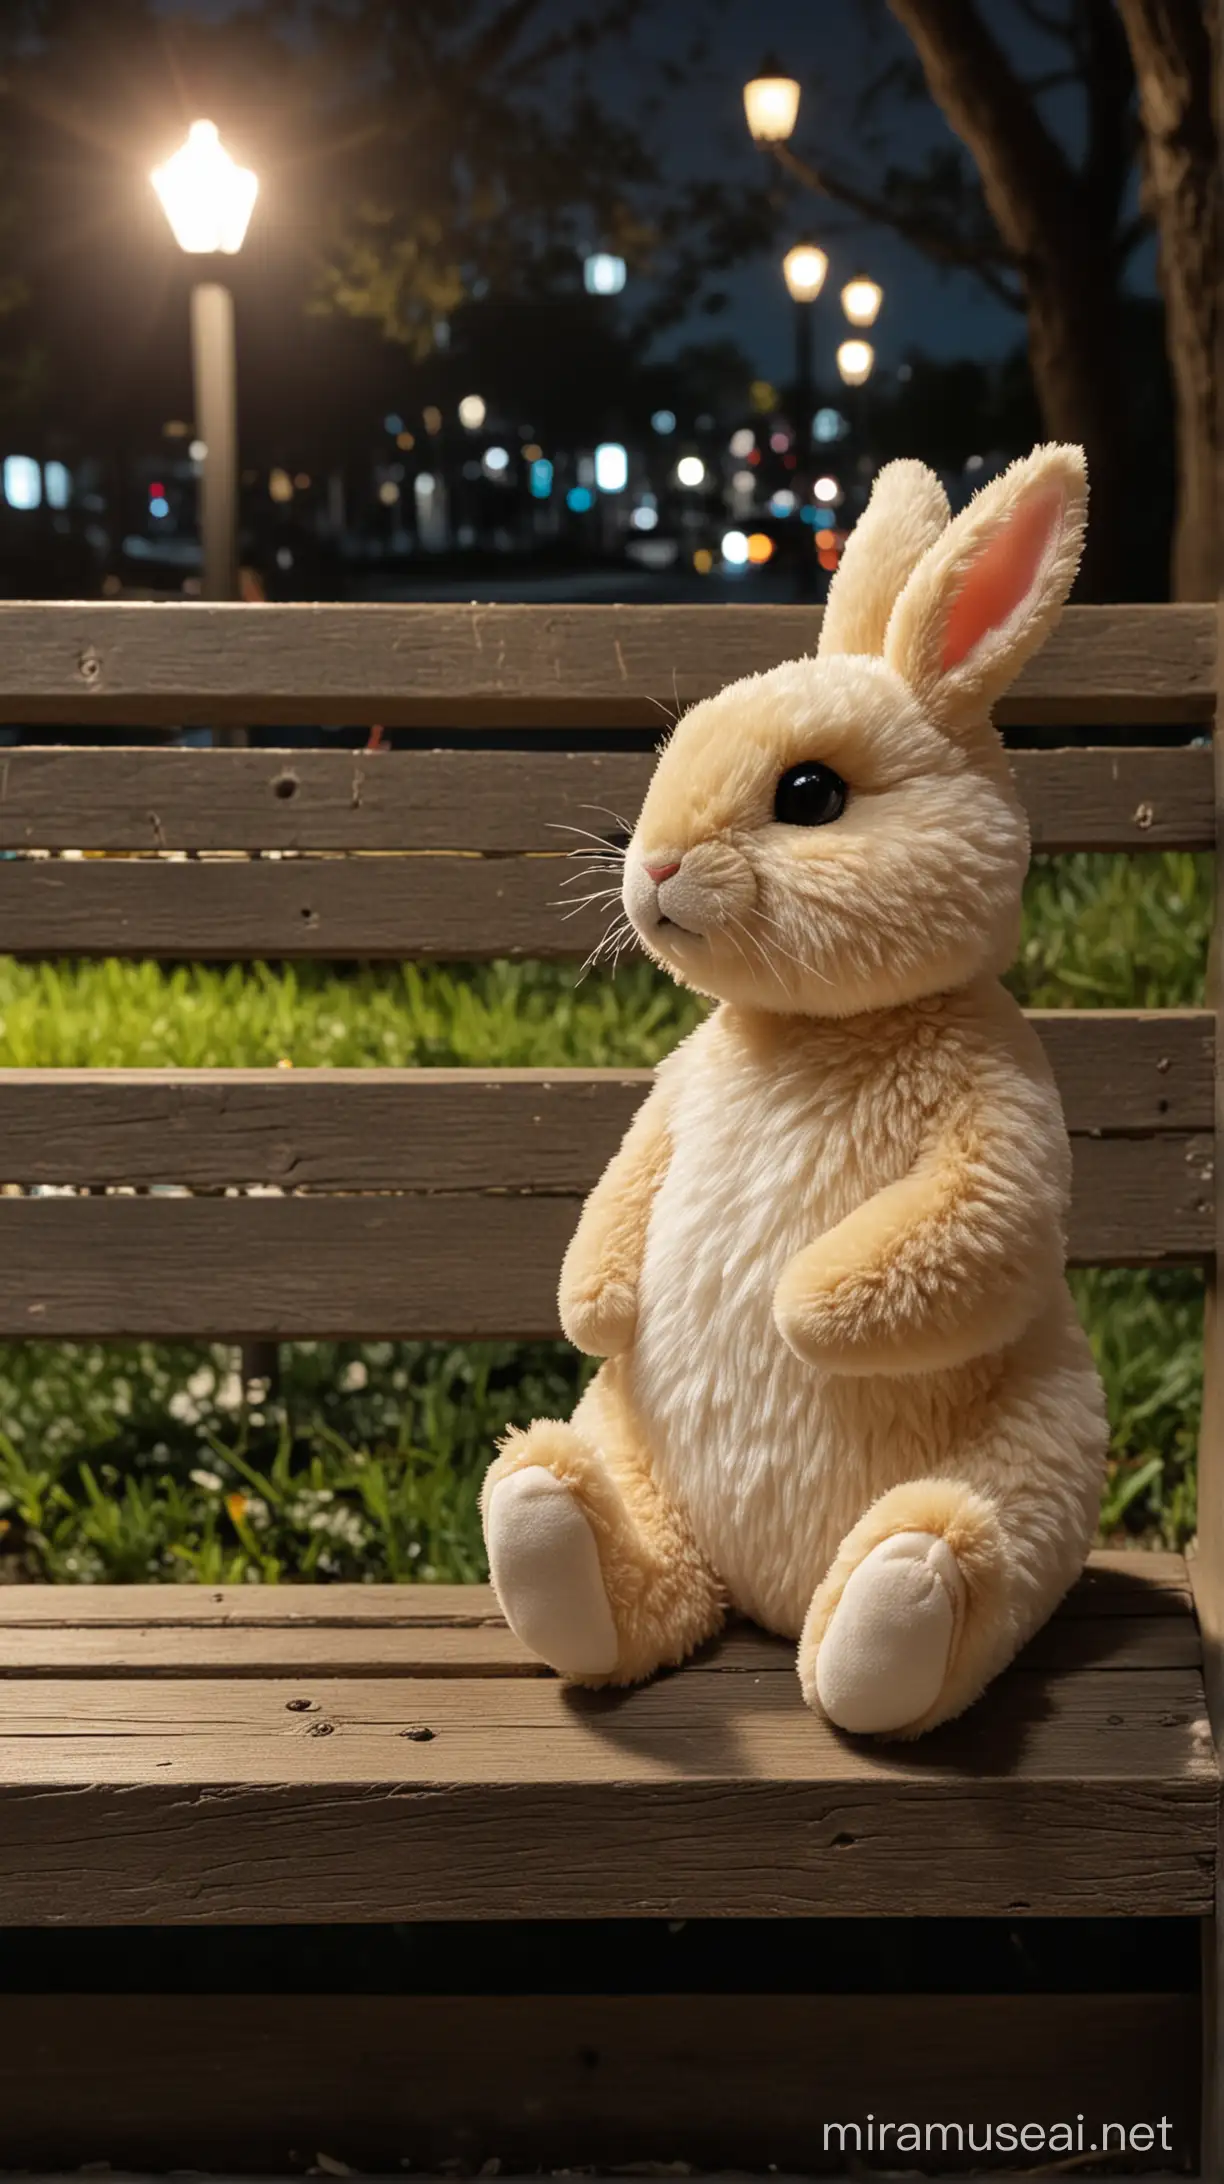 Conejito de peluche pequeño sentado en un banco del parque de noche